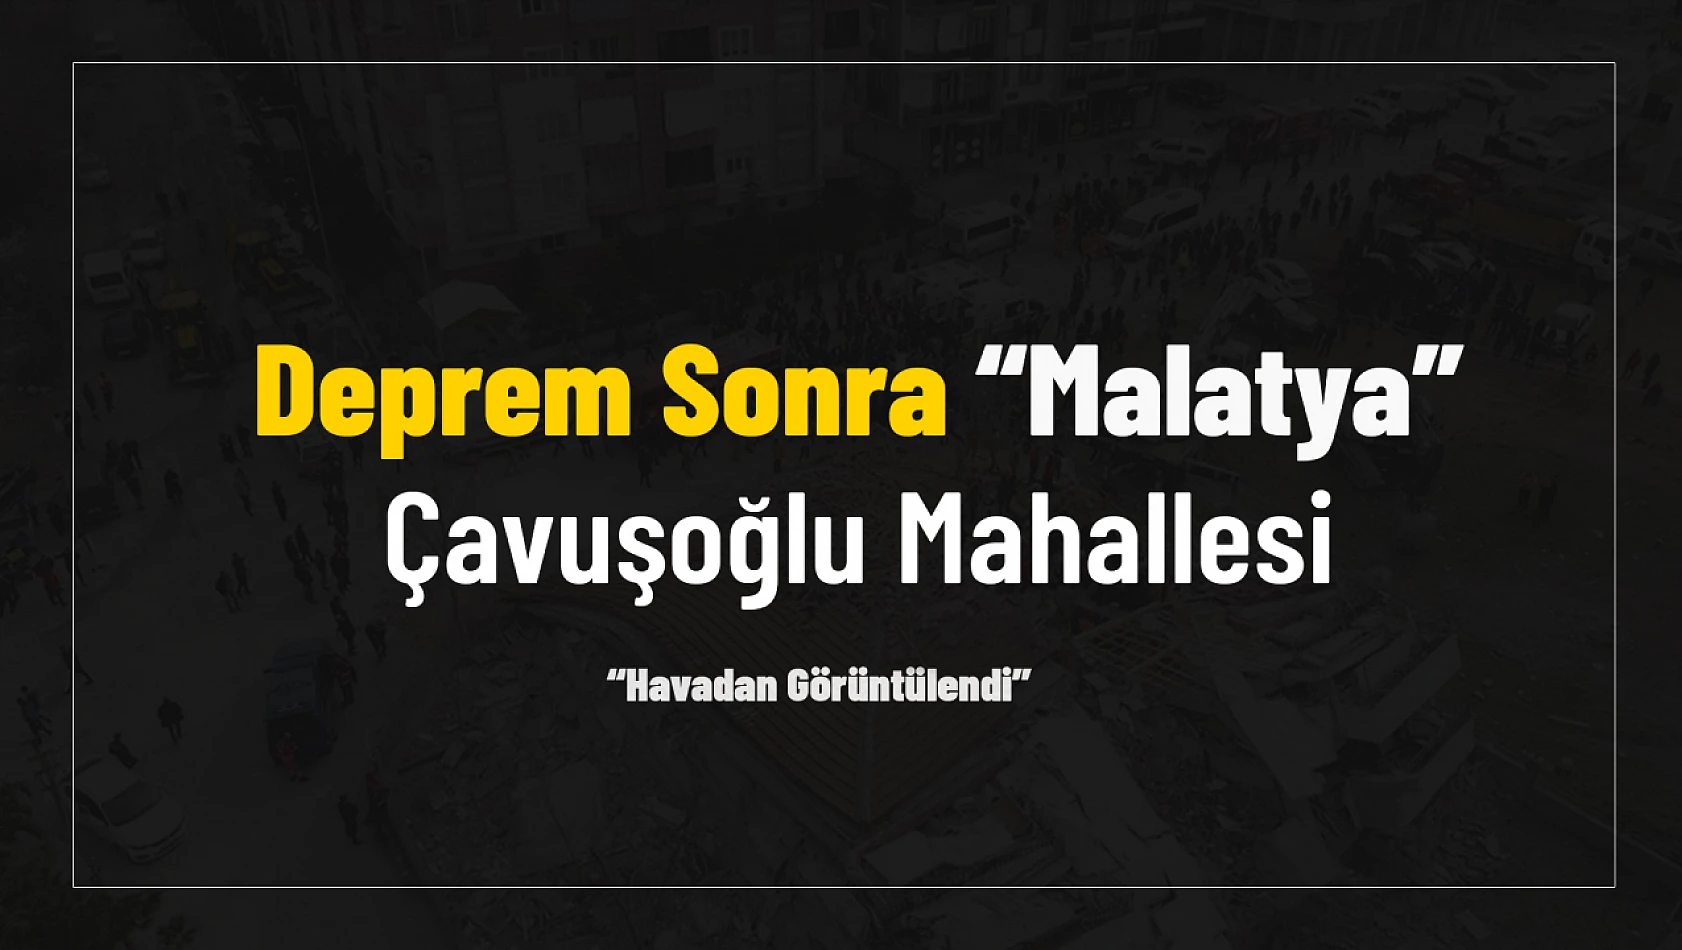 Deprem Sonrası Malatya Çavuşoğlu Hava'dan Görüntülendi